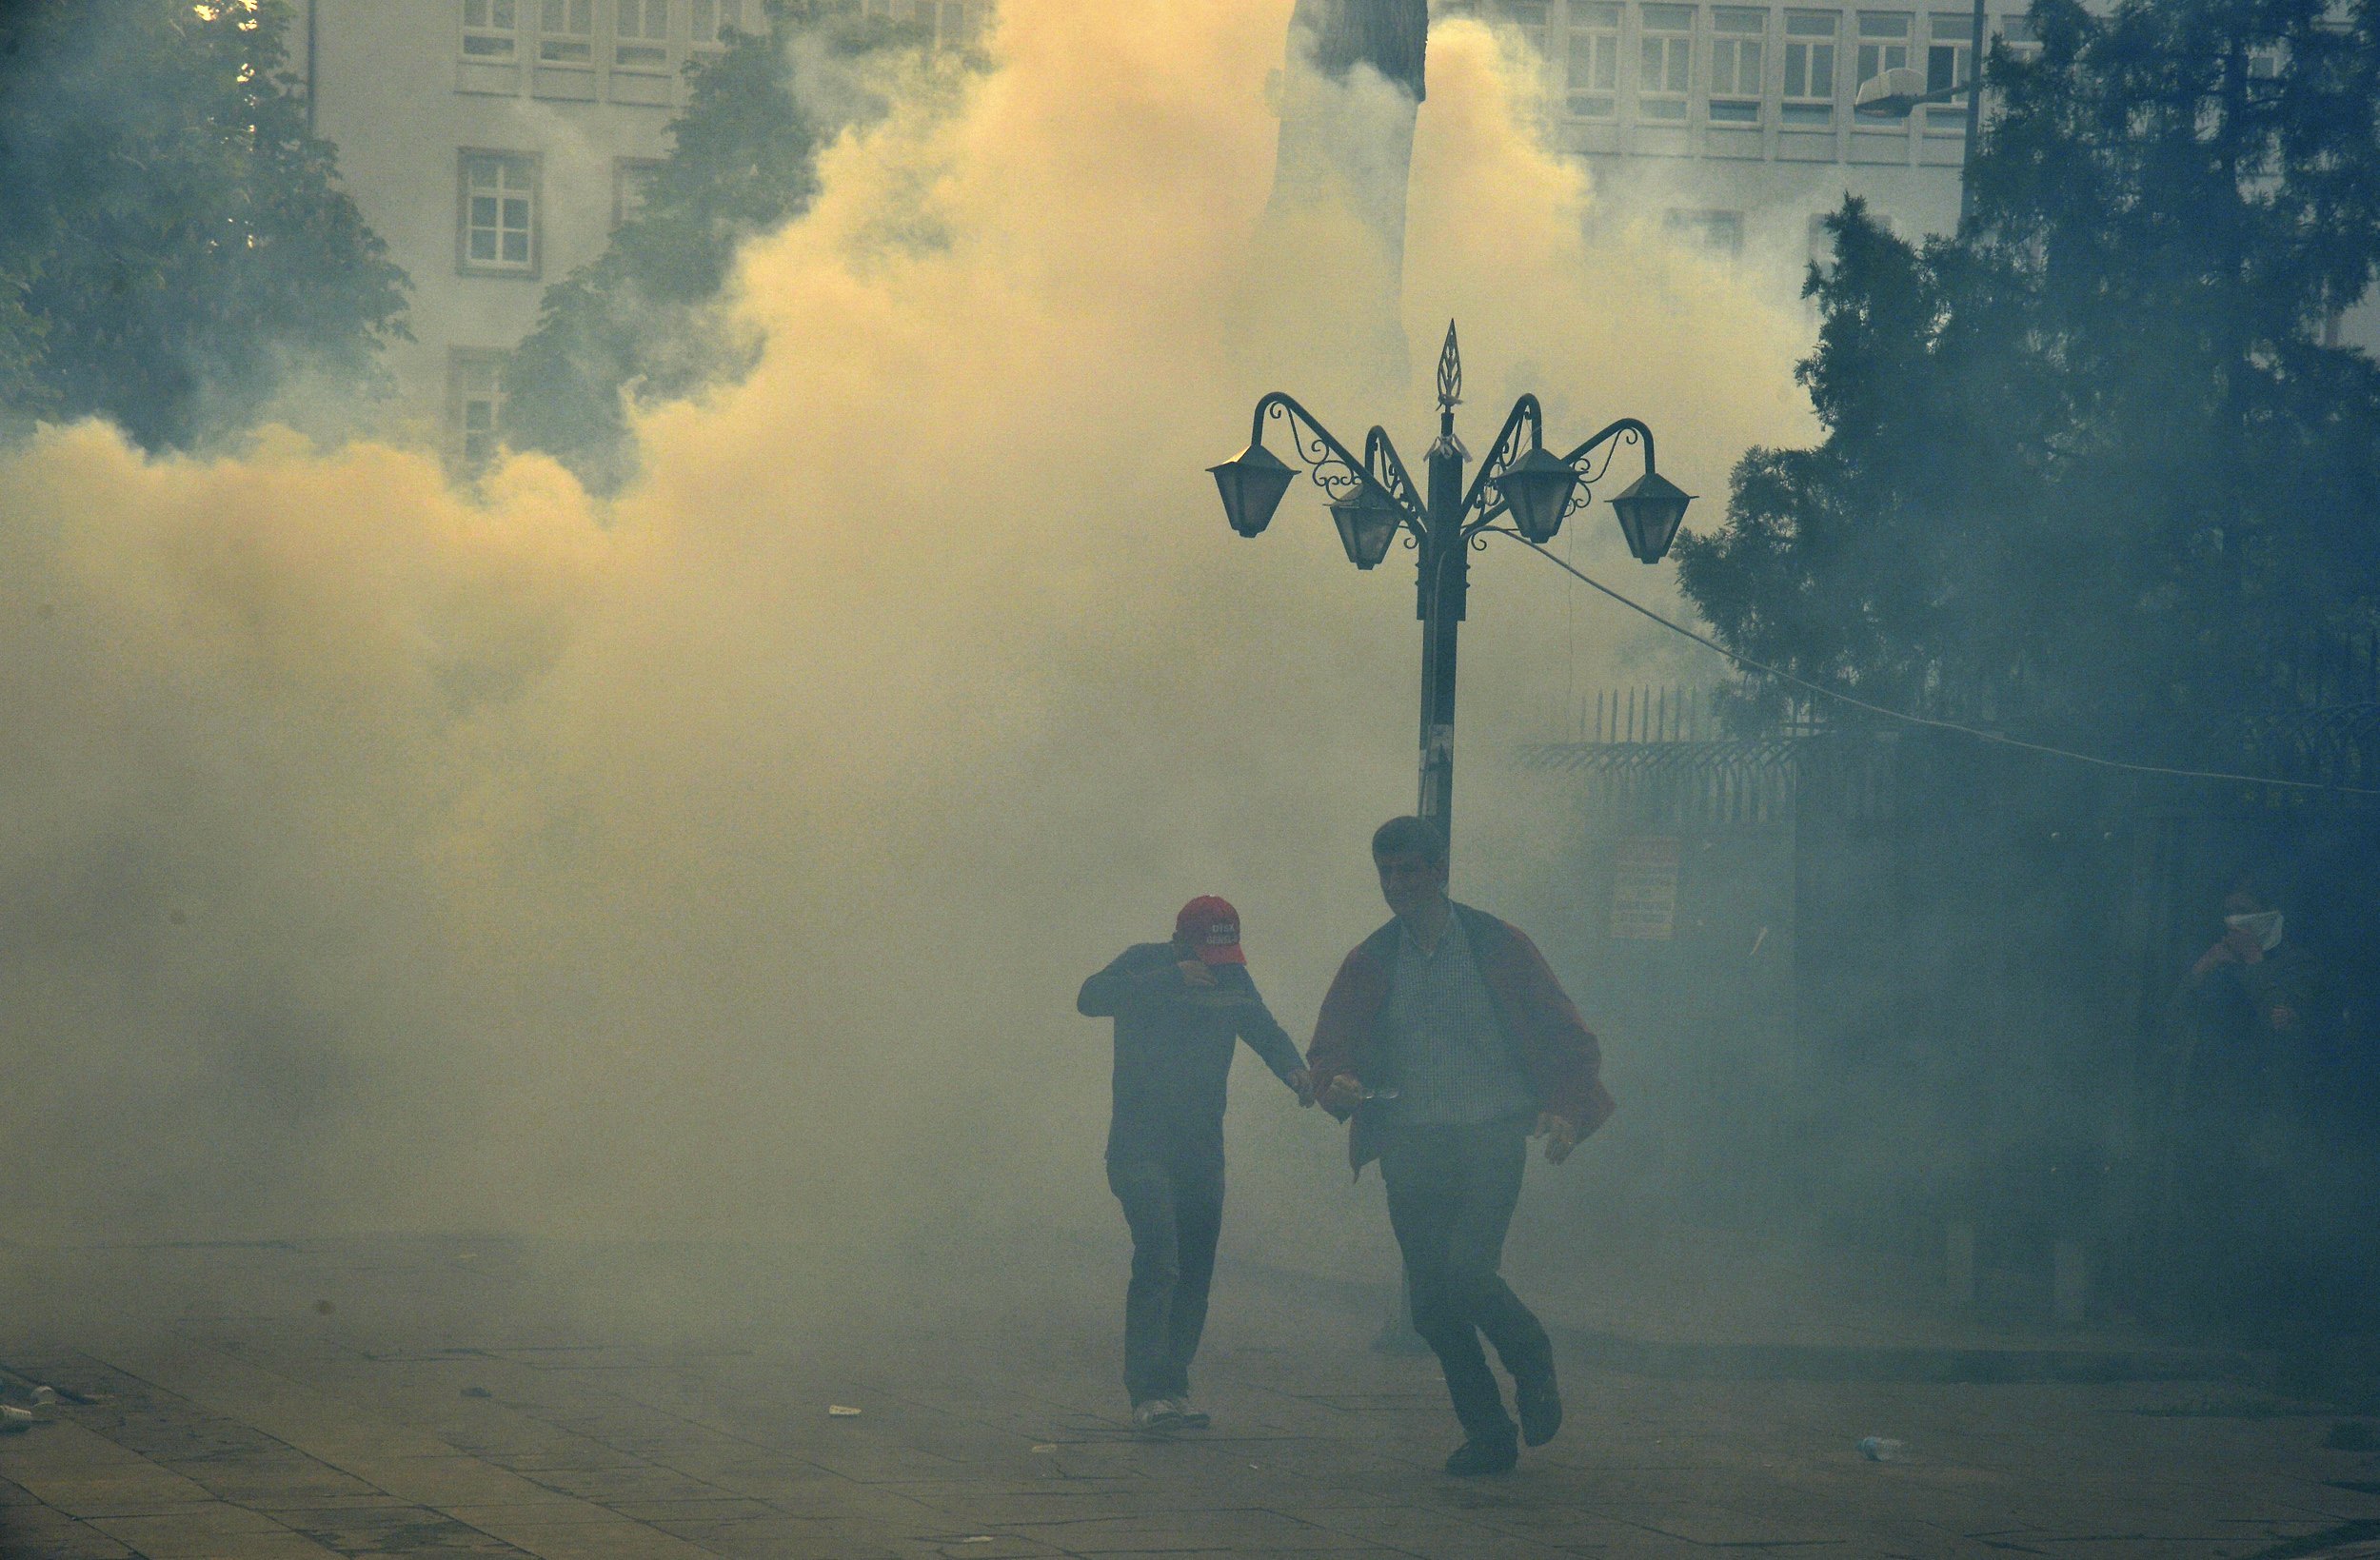 274 νεκροί ανθρακωρύχοι βάζουν “φωτιά” σε όλη την Τουρκία – Επεισόδια στην πλατεία Ταξίμ – Βίντεο ντοκουμέντο: Ο Ερντογάν κρύφτηκε σε σούπερ μάρκετ